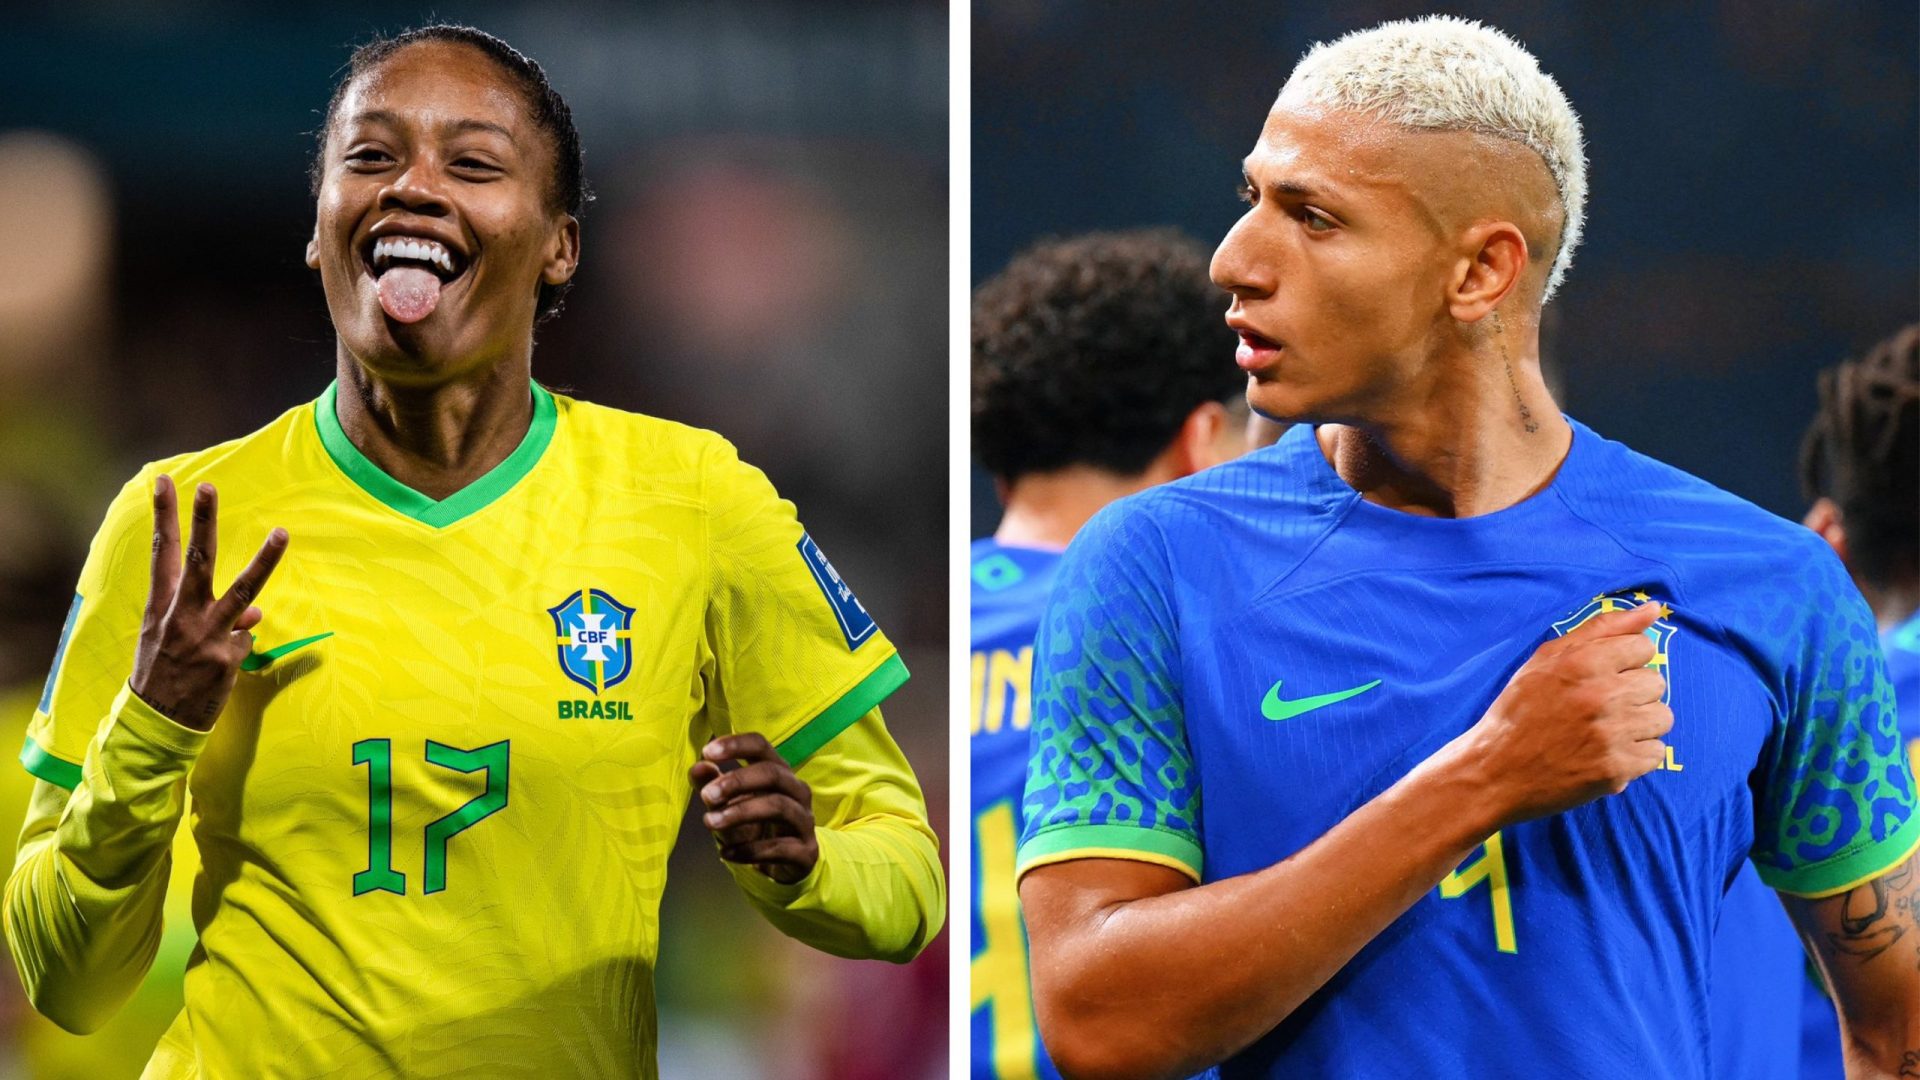 Richarlison e Ary Borges estão com os nomes em alta nas redes sociais após vitória do Brasil - Foto: Reprodução/ Twitter @SpursOfficial @_aryborges